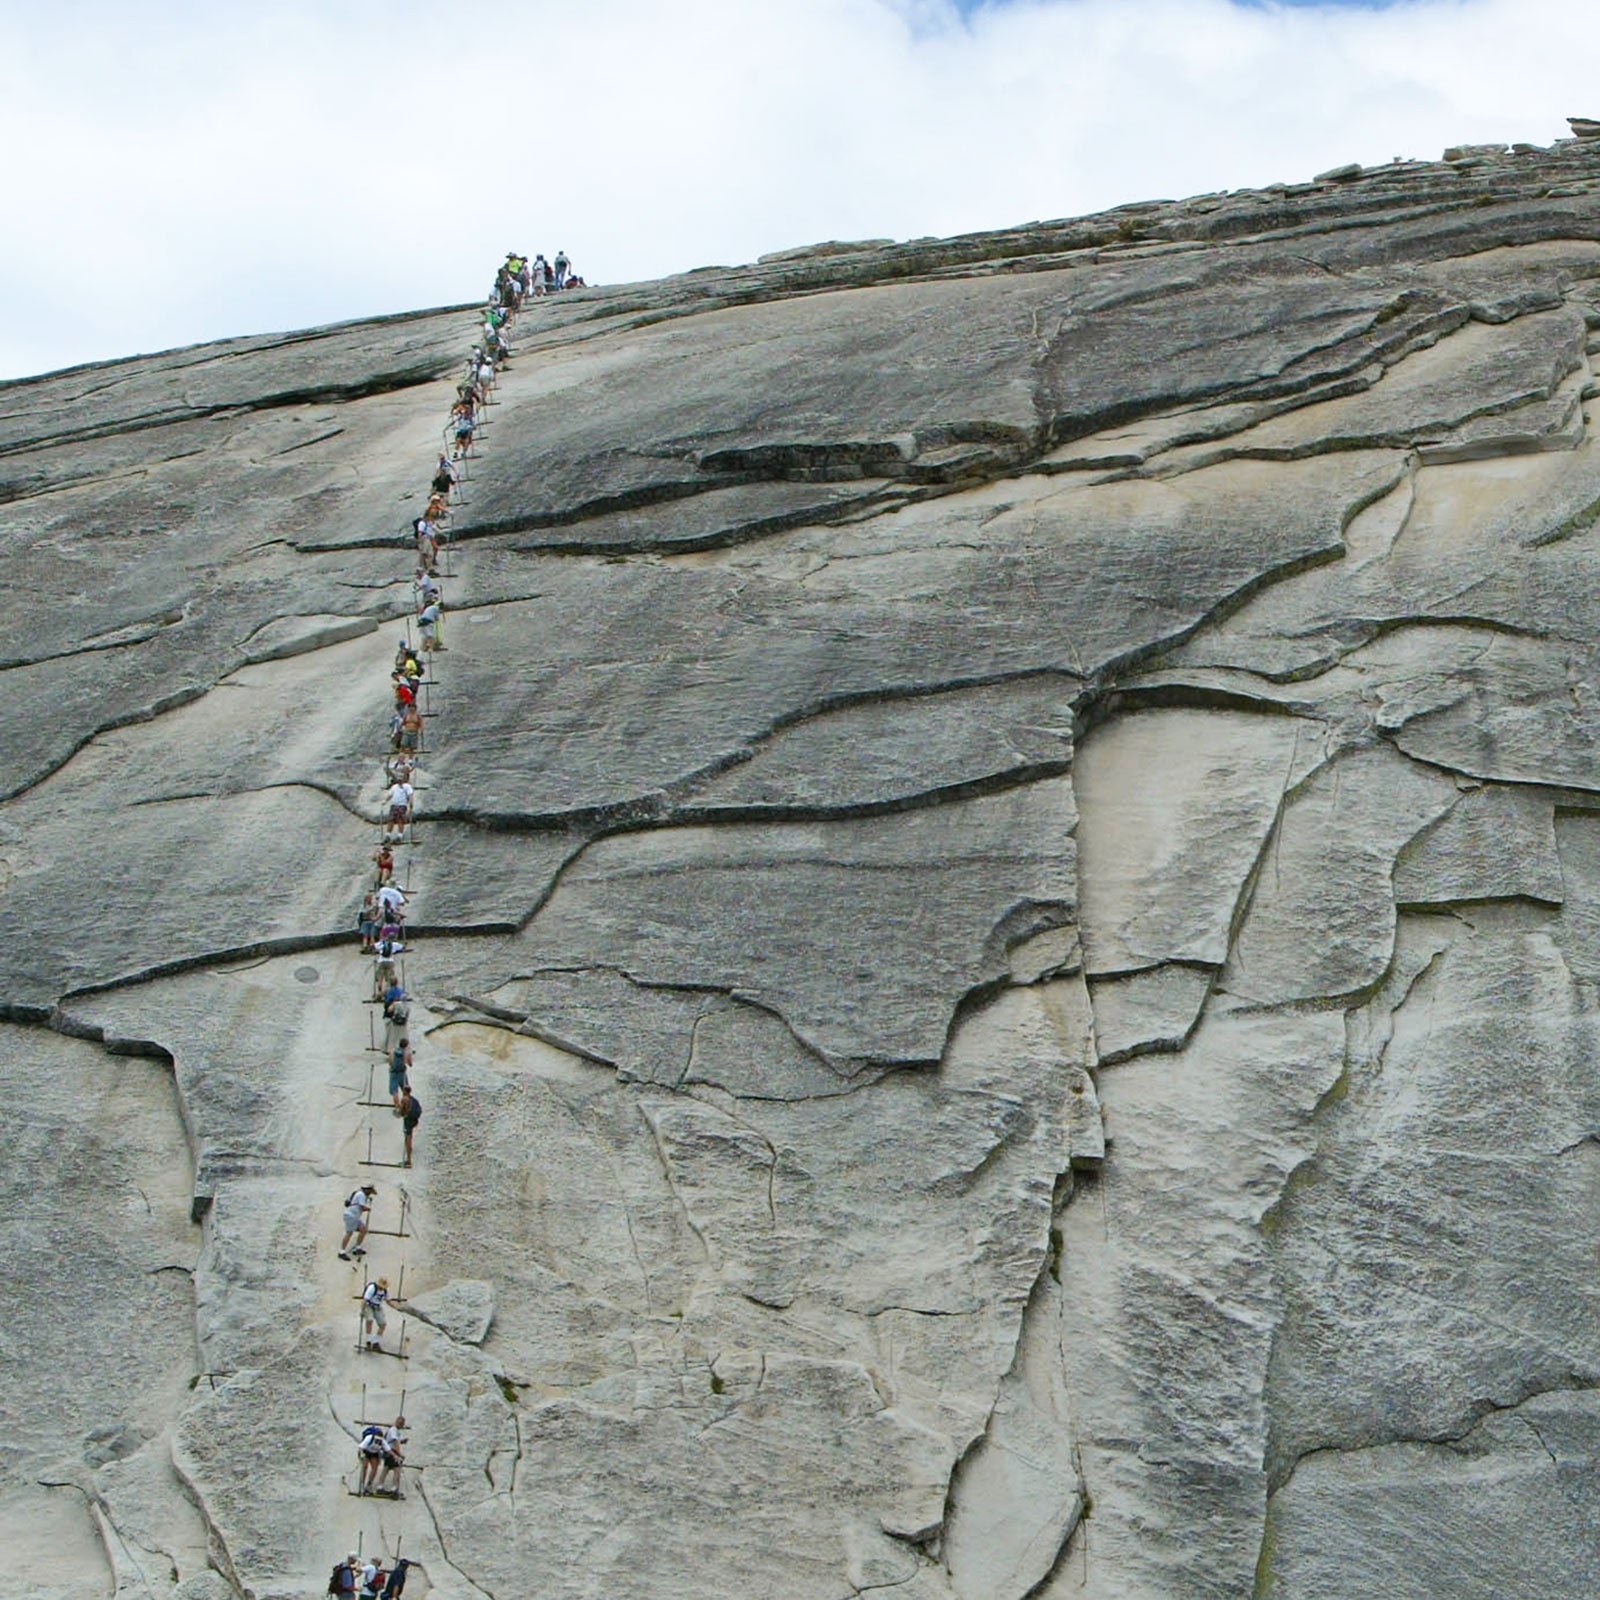 Yosemite Permits Aren't Making Half Dome Safer